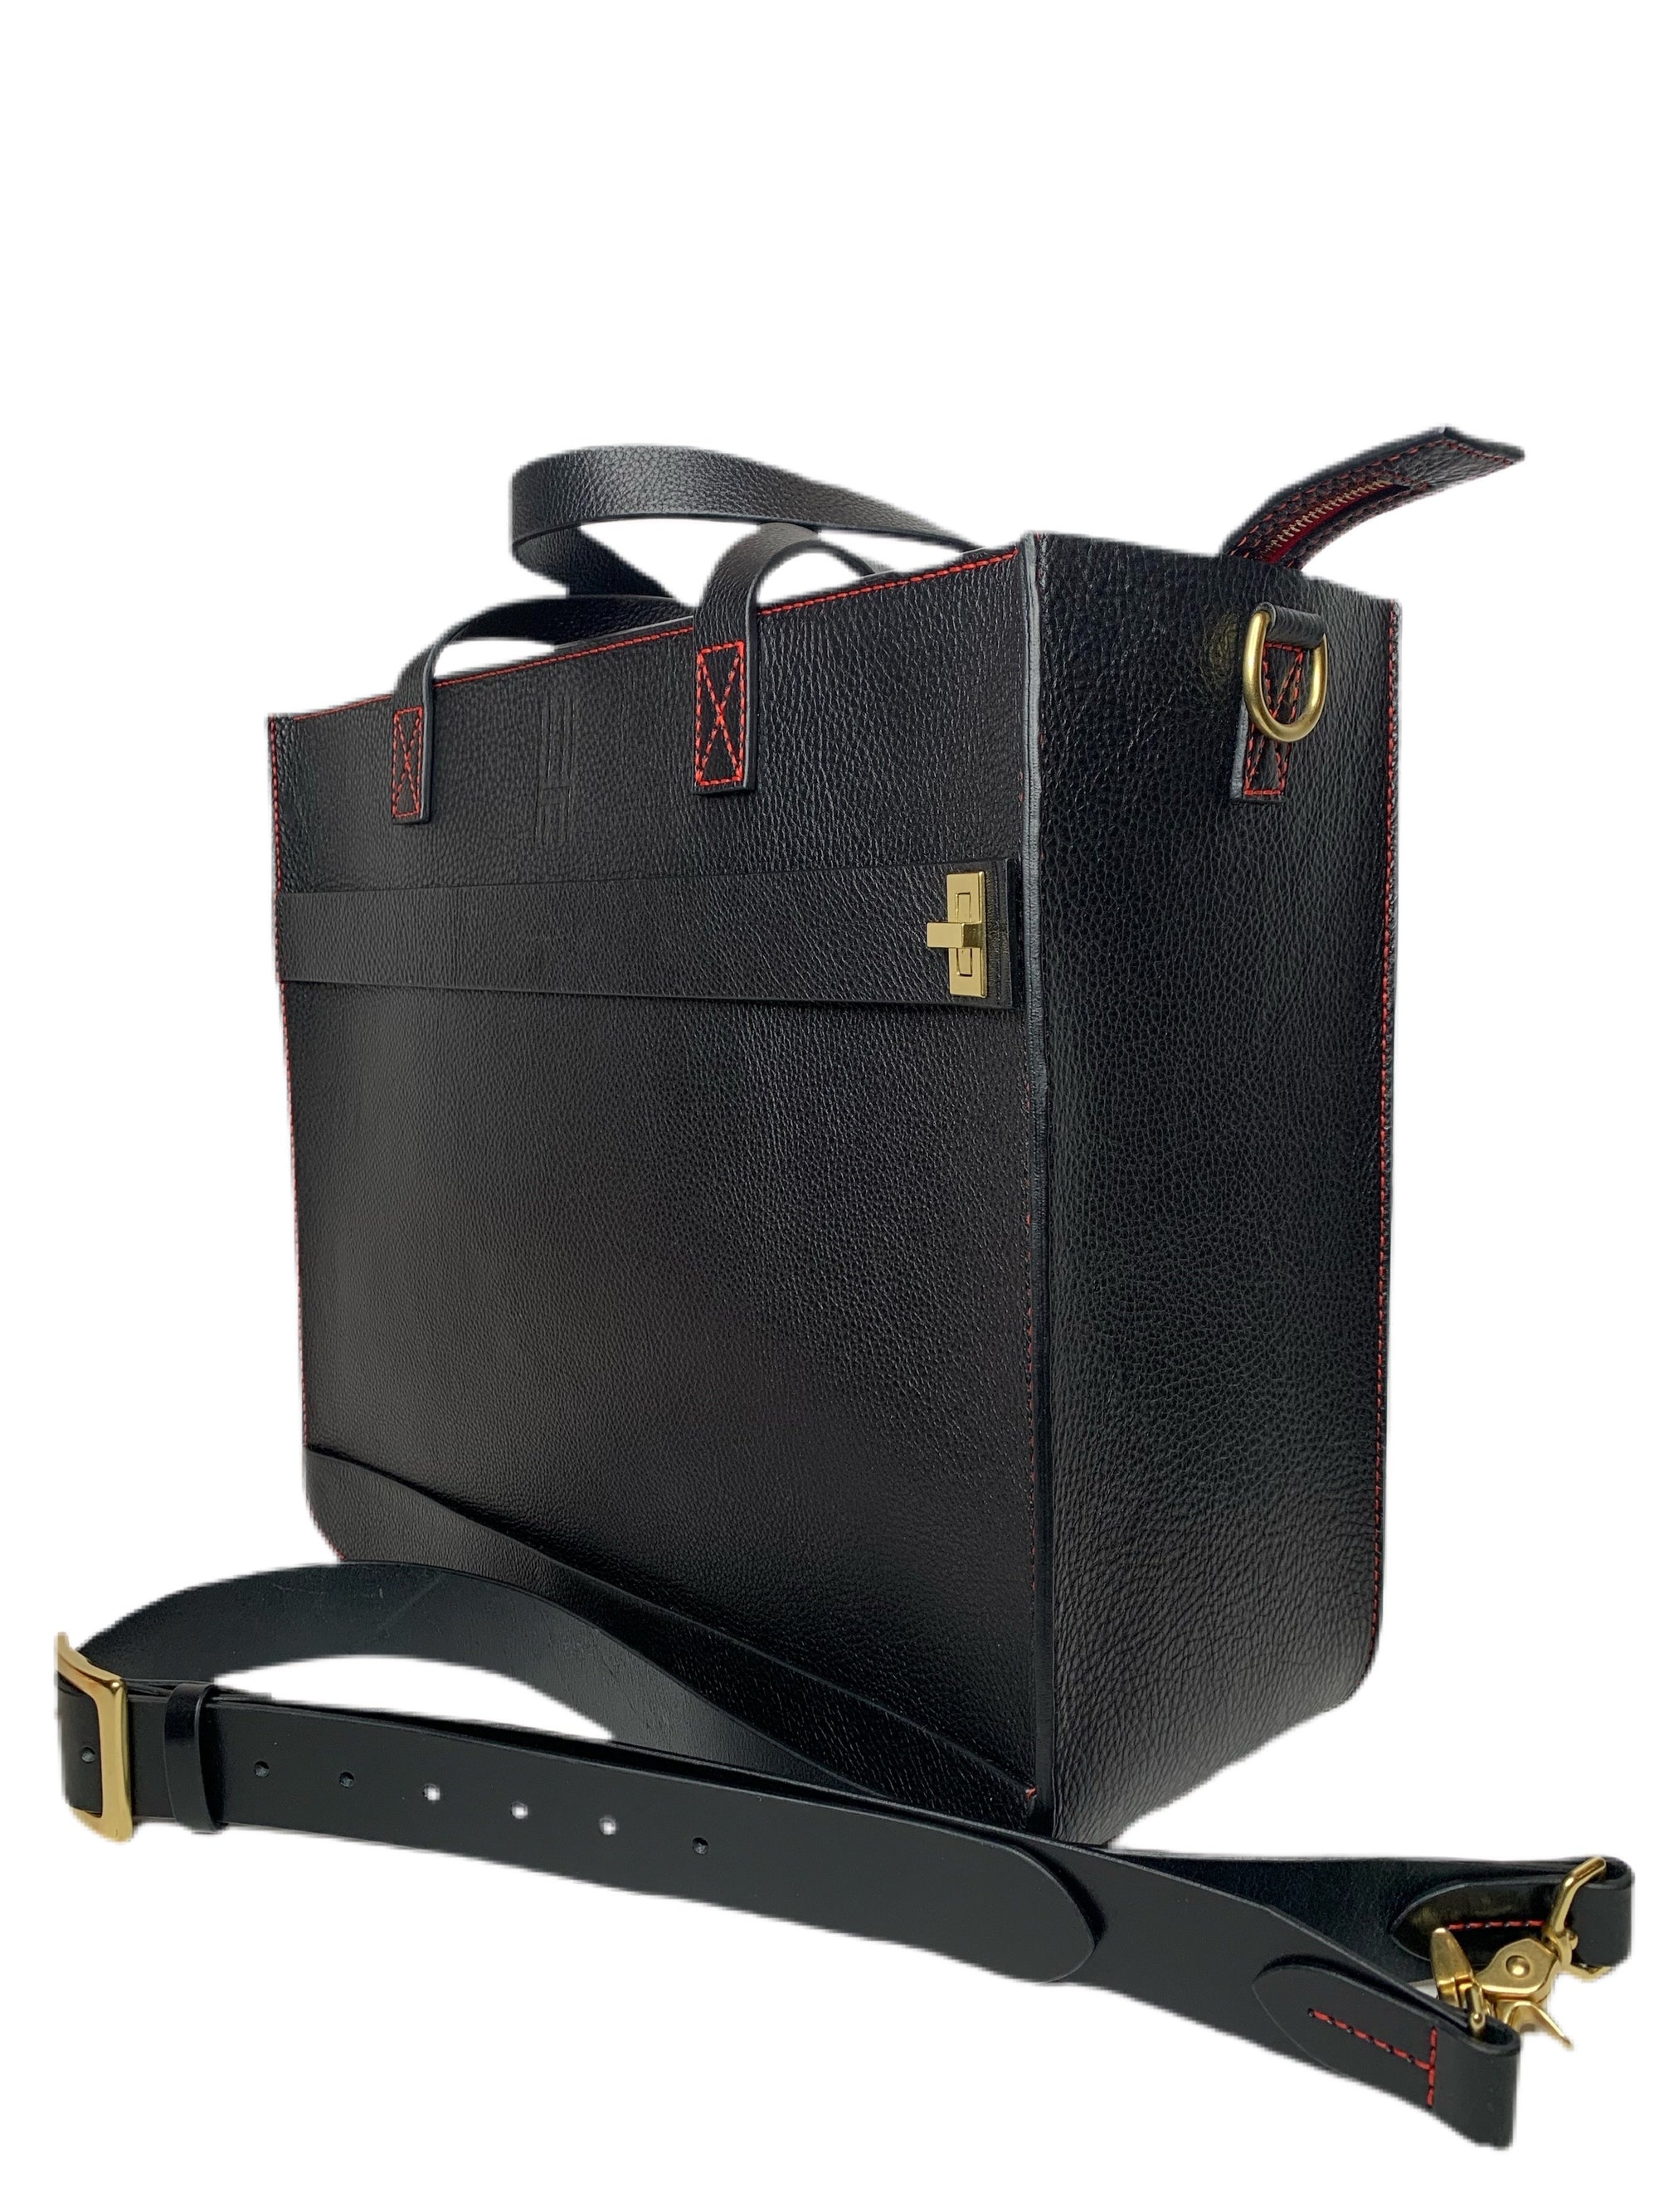 Designer Italian Leather Bags